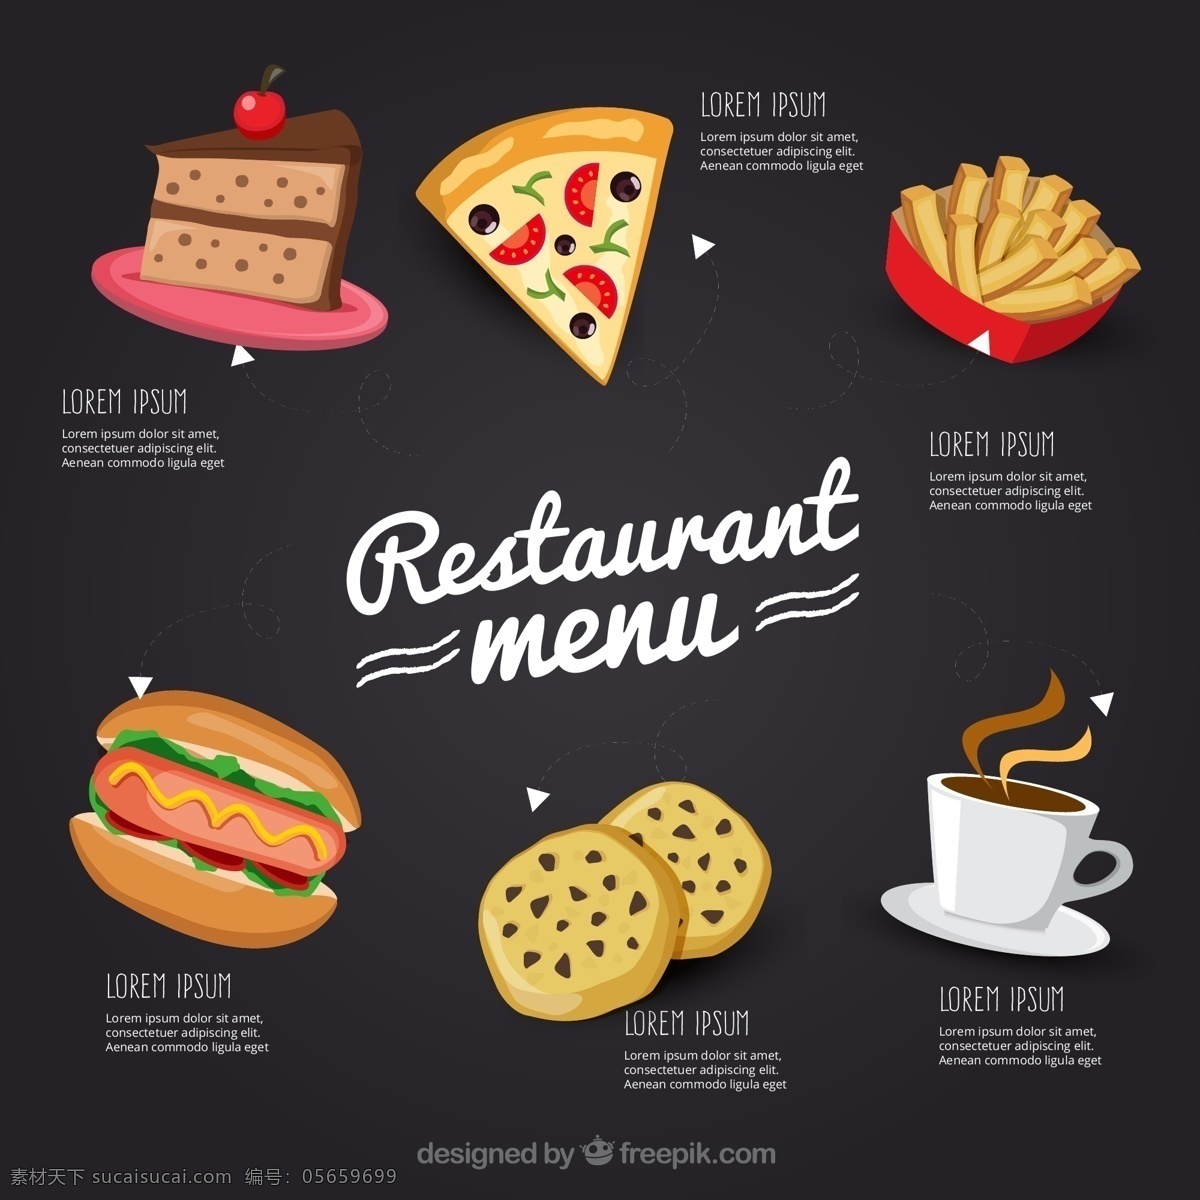 创意 快餐馆 菜单 矢量 咖啡 披萨 热狗 三角蛋糕 薯条 餐厅 餐馆 饼干 文化艺术 绘画书法